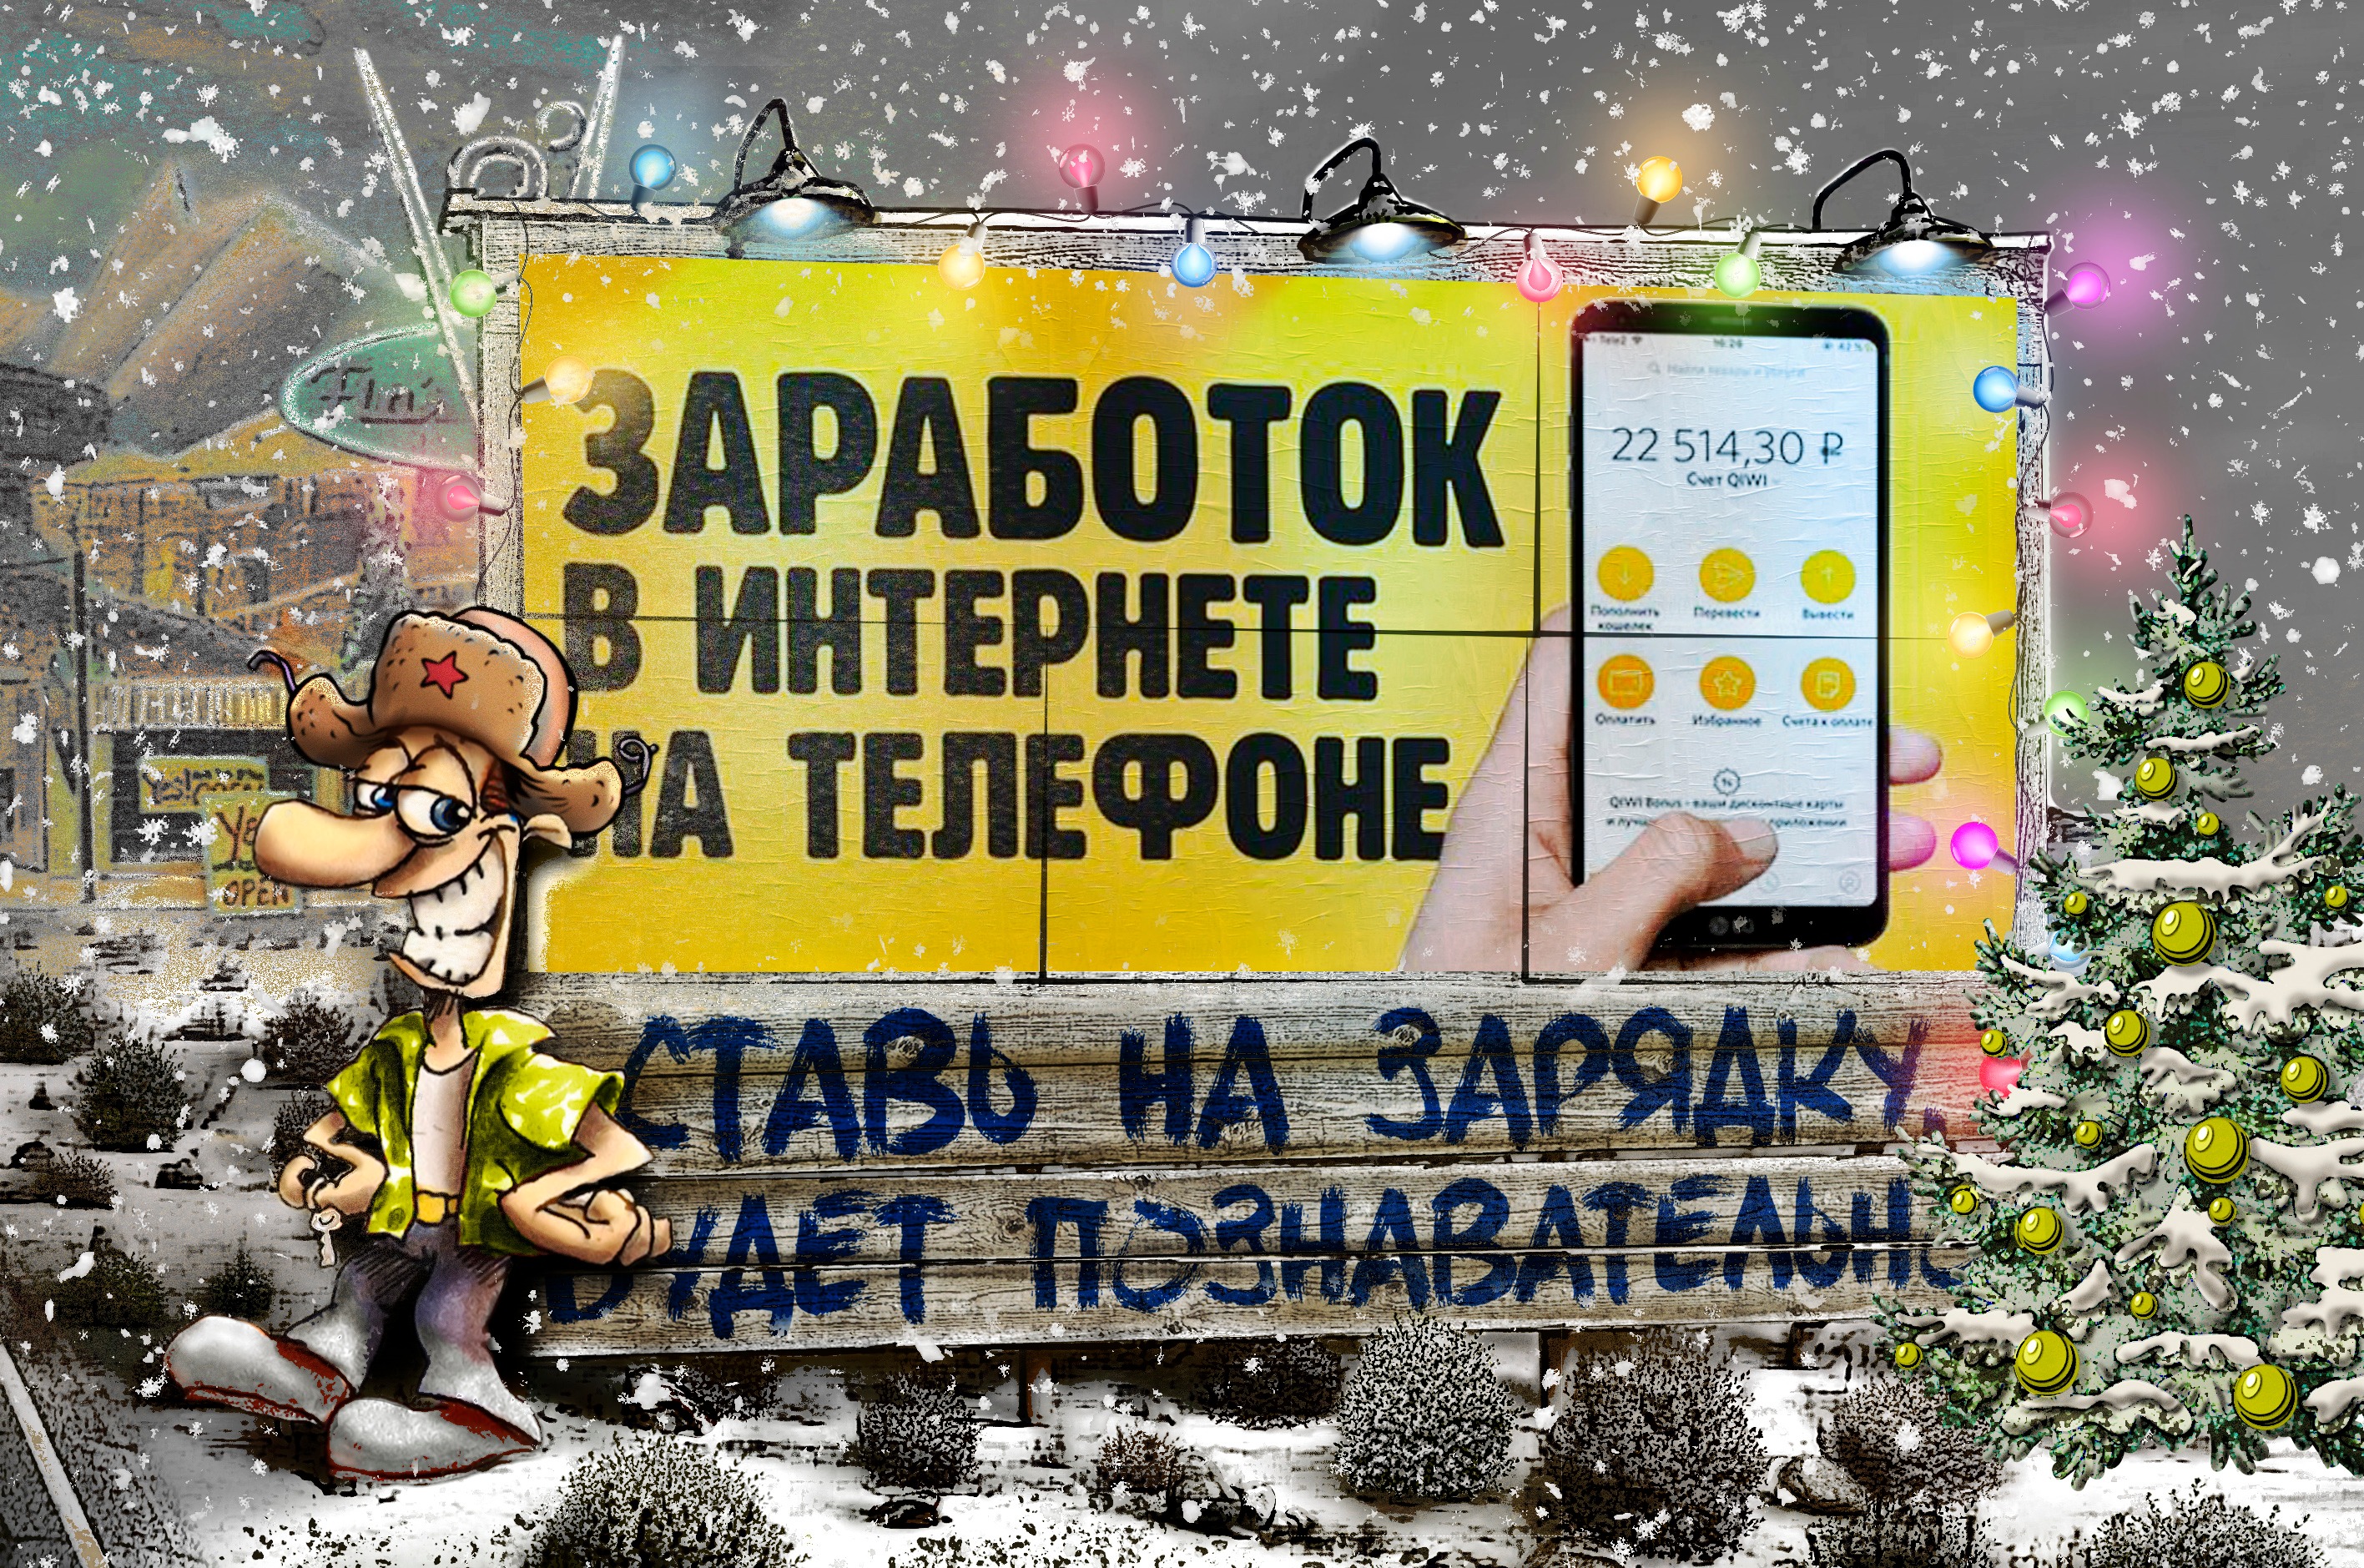 Заработок телеграмм без вложений на русском фото 106